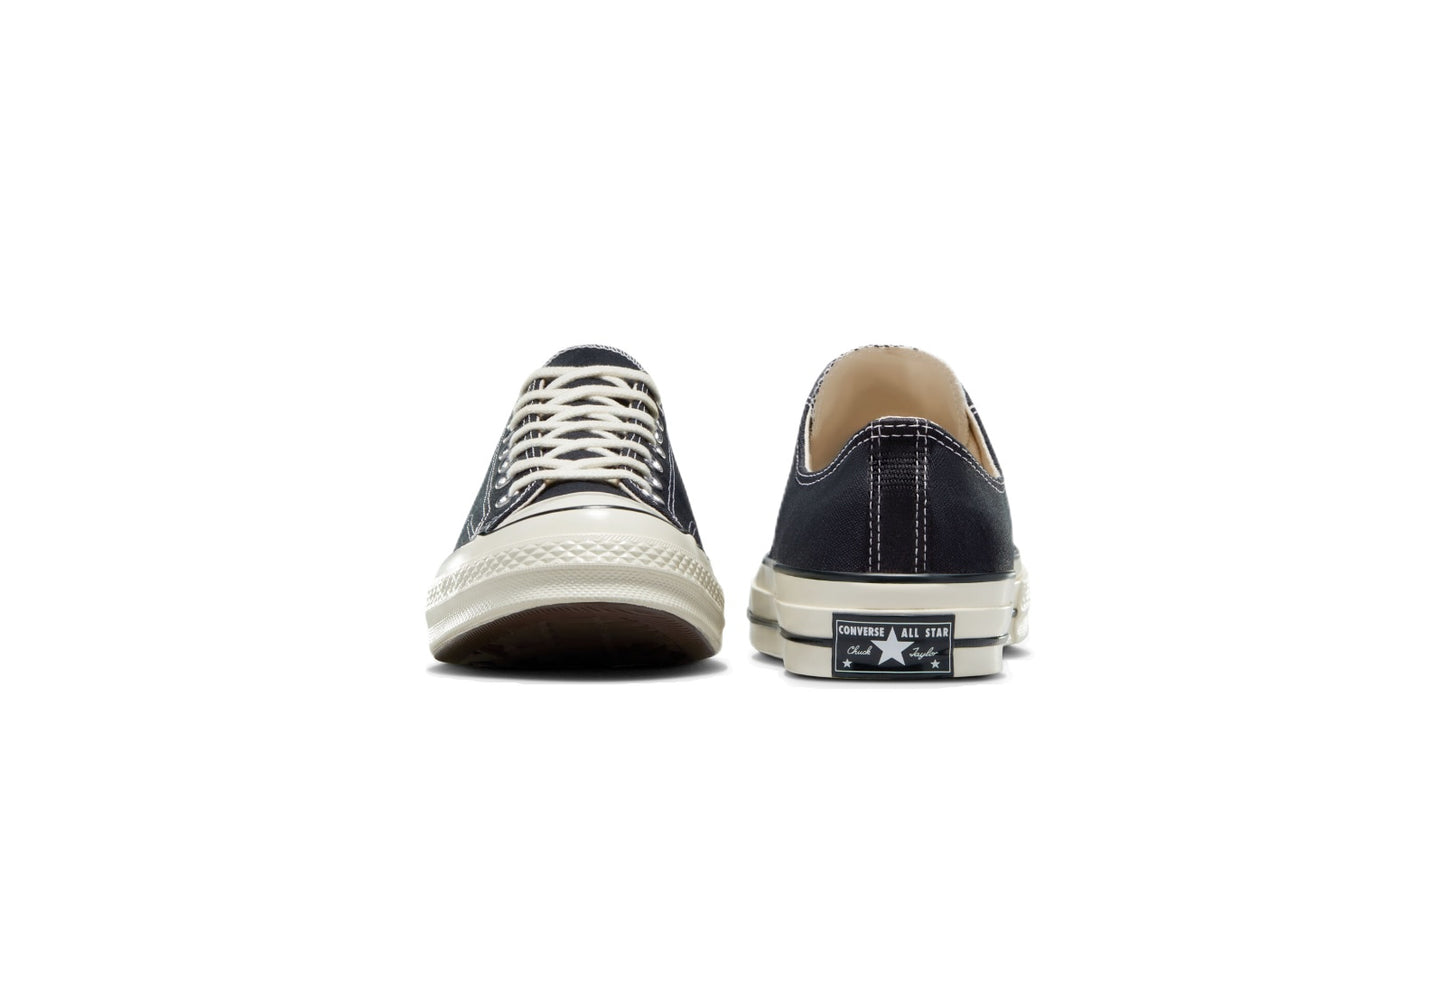 Converse Chuck 70 Low Top Vintage Canvas Sneaker, Black/Black/Egret (Men)